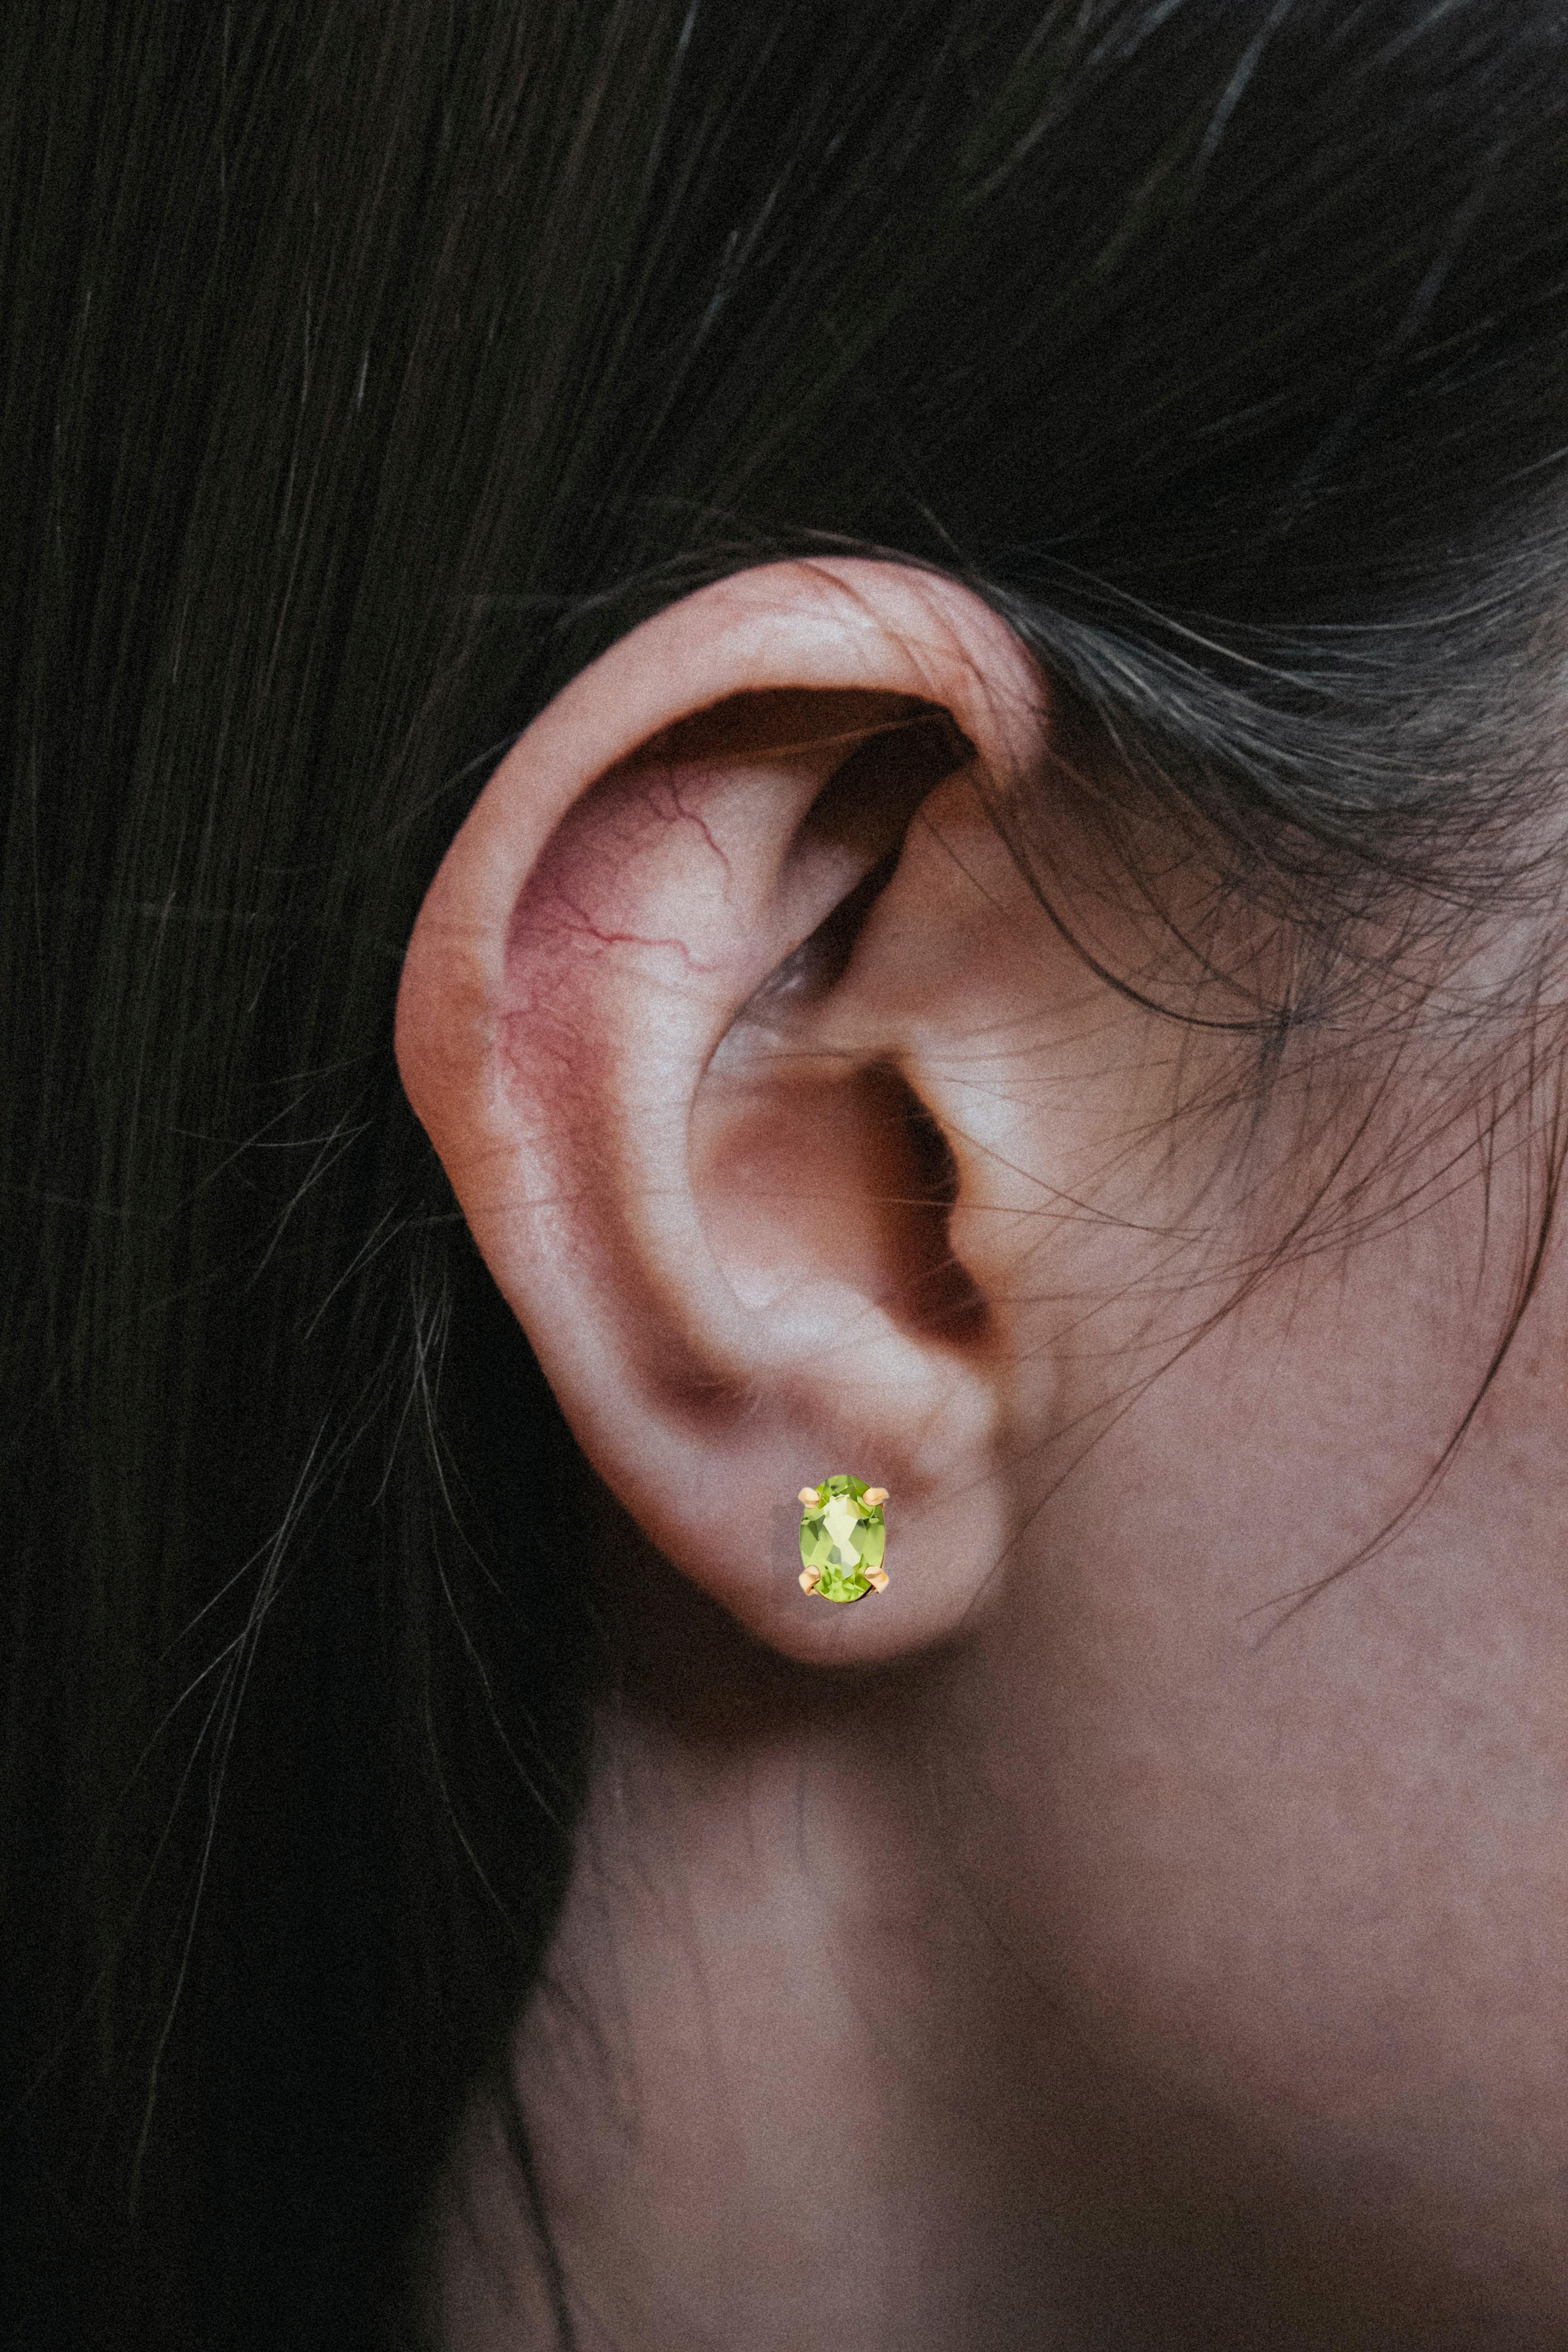 Women's August birthstone peridot 14k gold earrings studs. For Sale